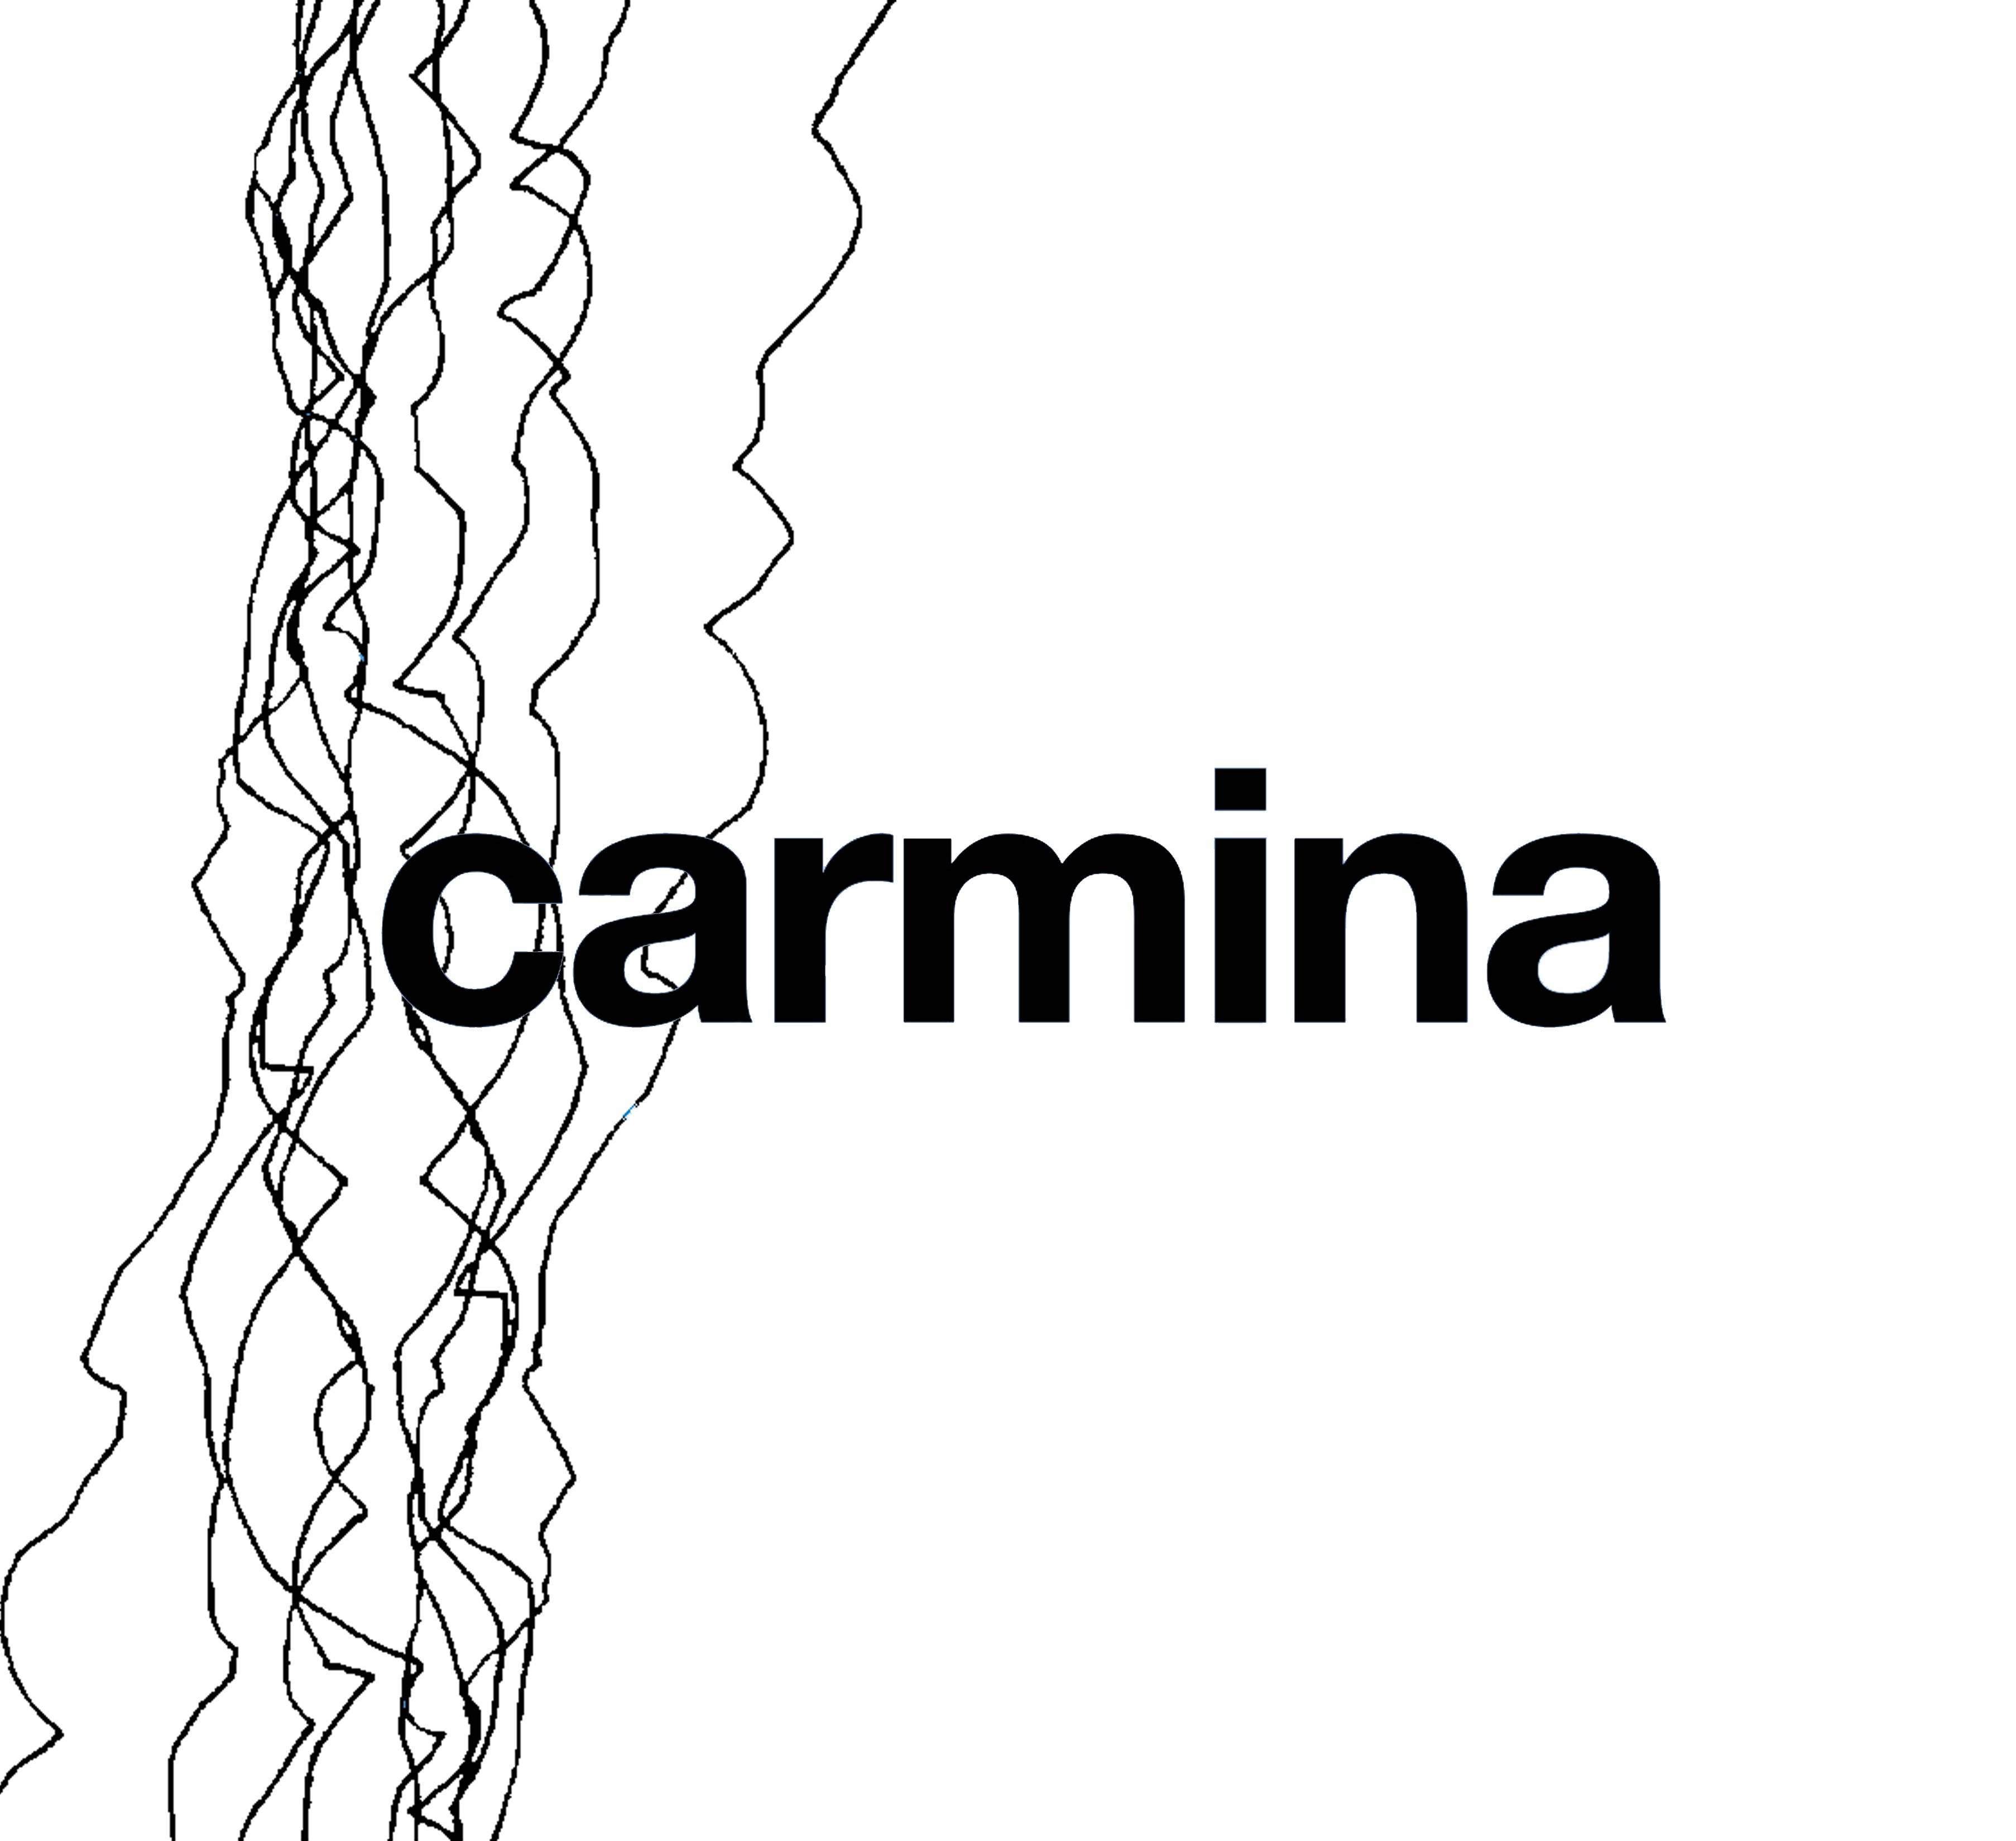 Carmina 4